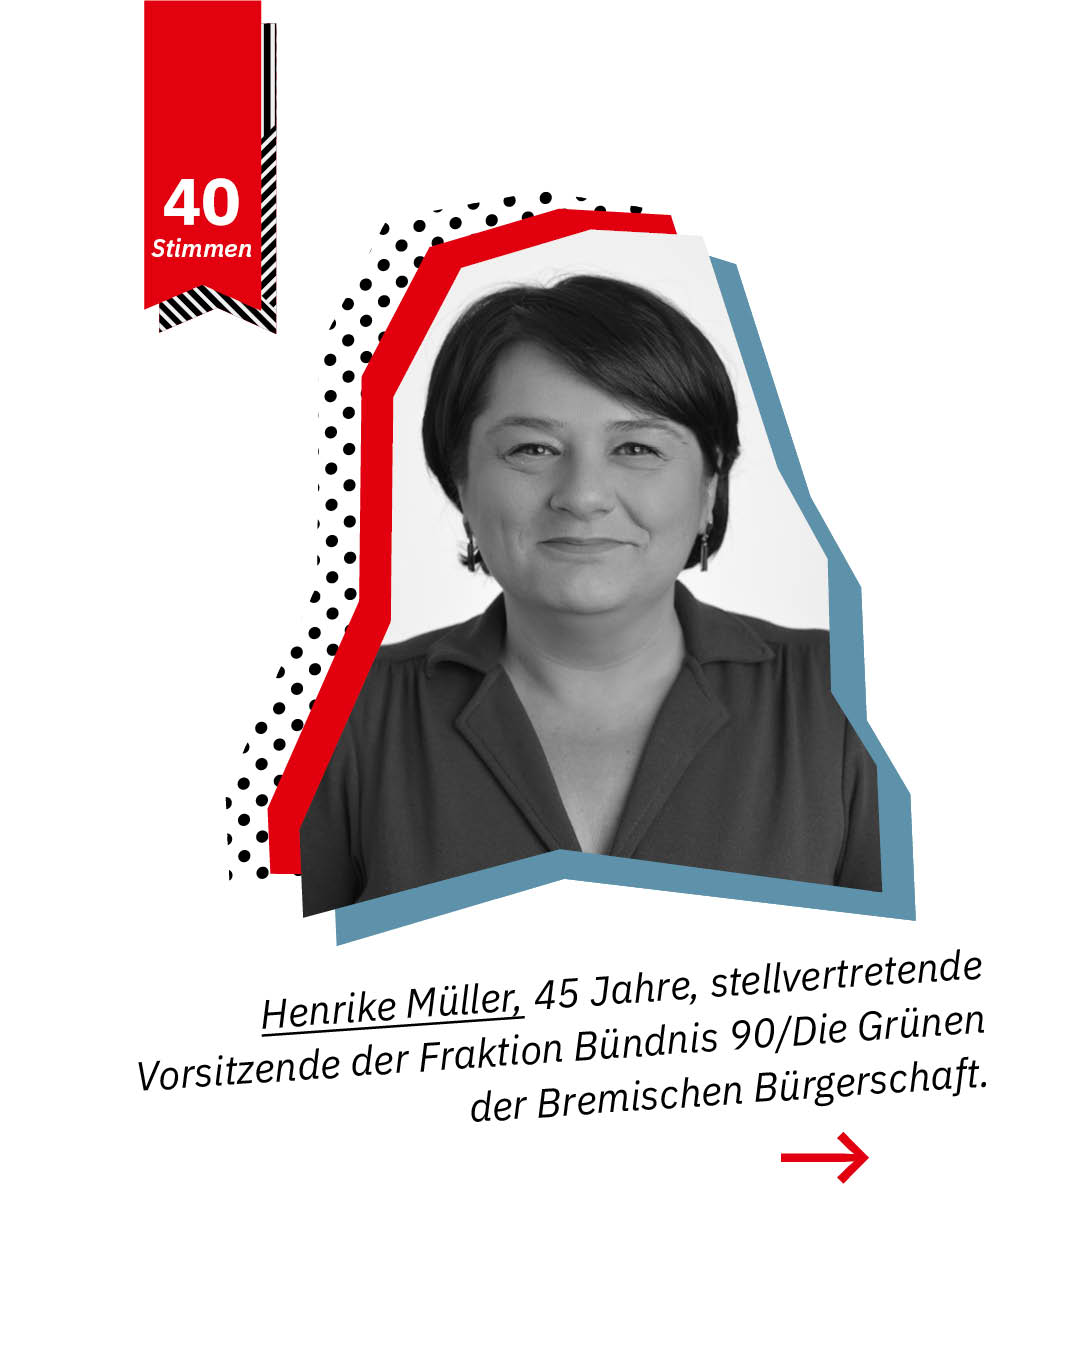 Statement 40 Jahre Gleichberechtigung, Henrike Müller, stellvertretende Vorsitzende der Fraktion Bündnis 90/Die Grünen, Bremische Bürgerschaft